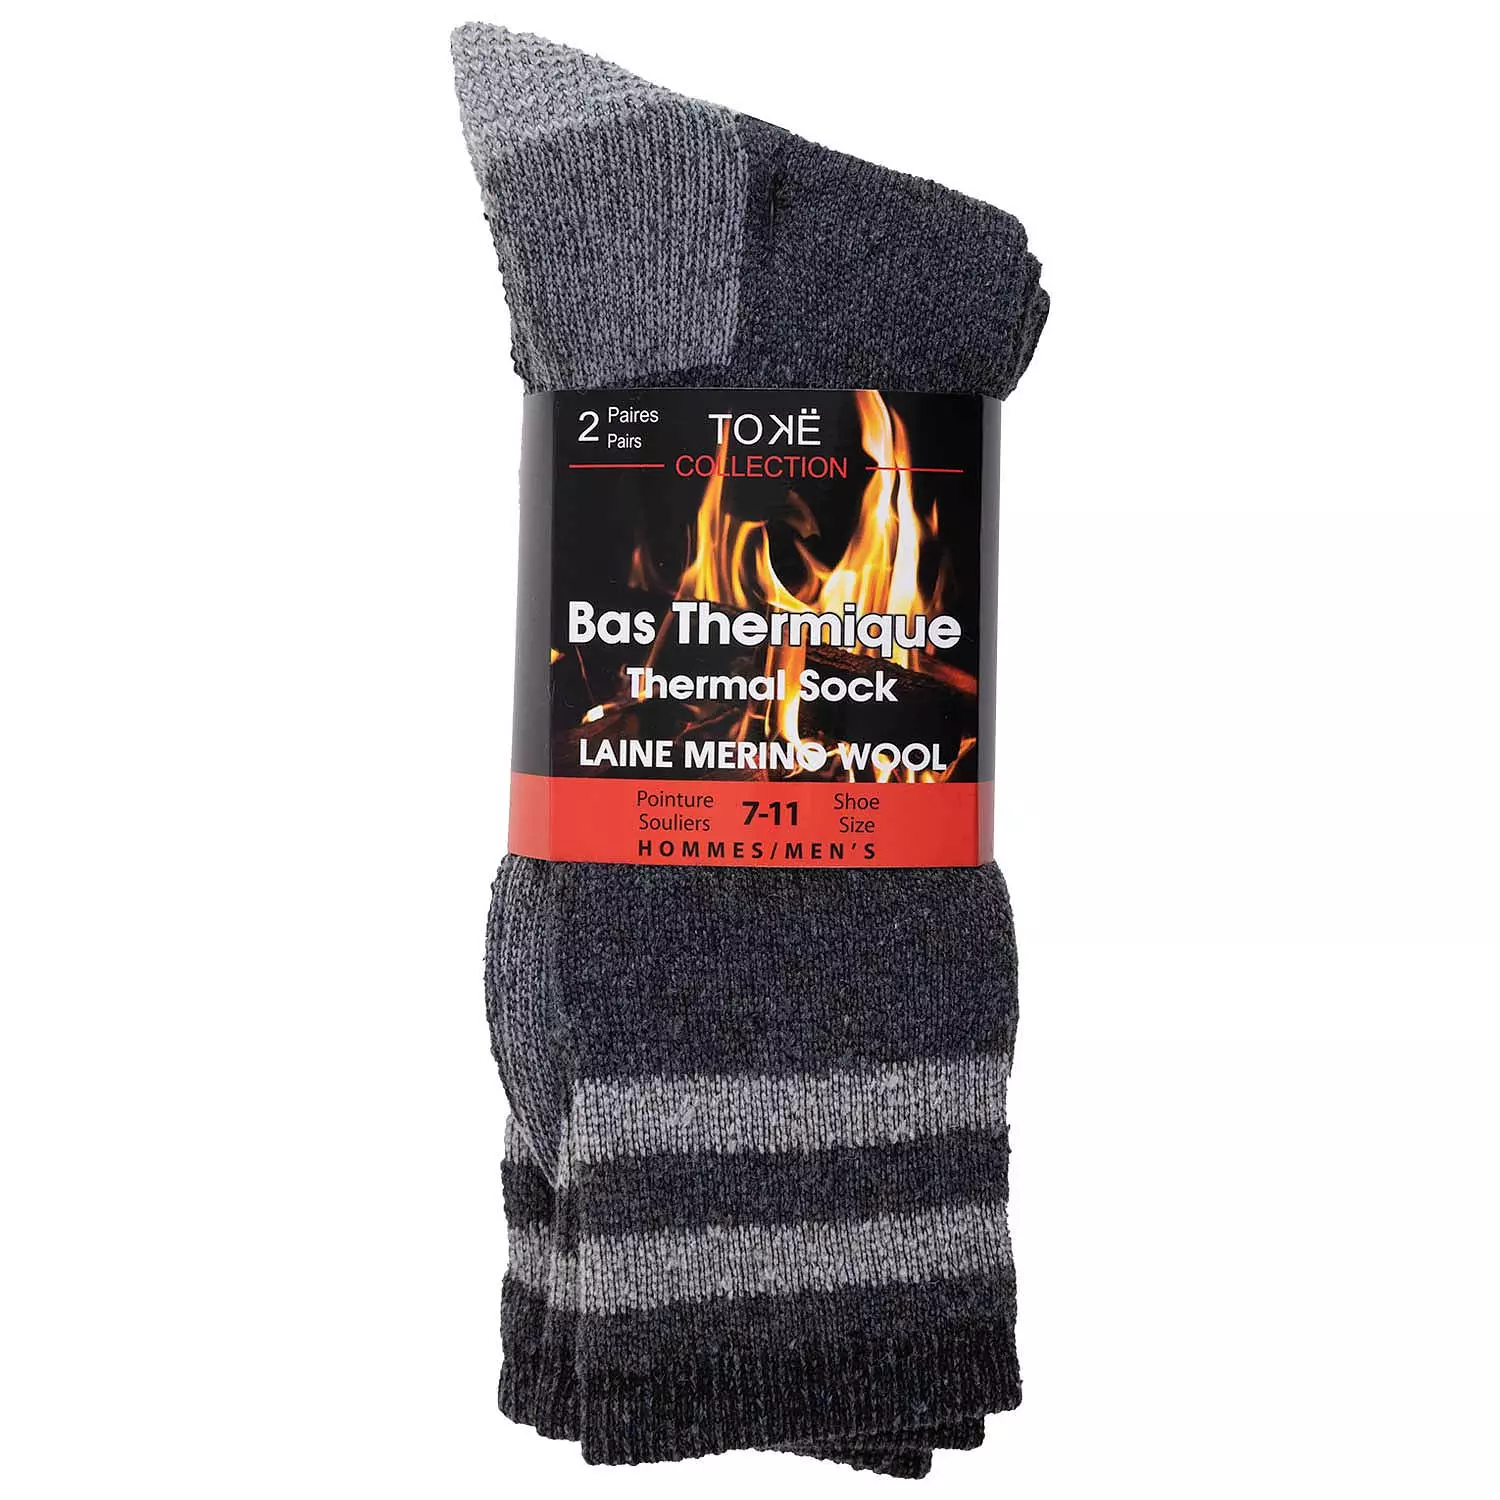 Men's merino wool thermal socks, charcoal, 2 pairs